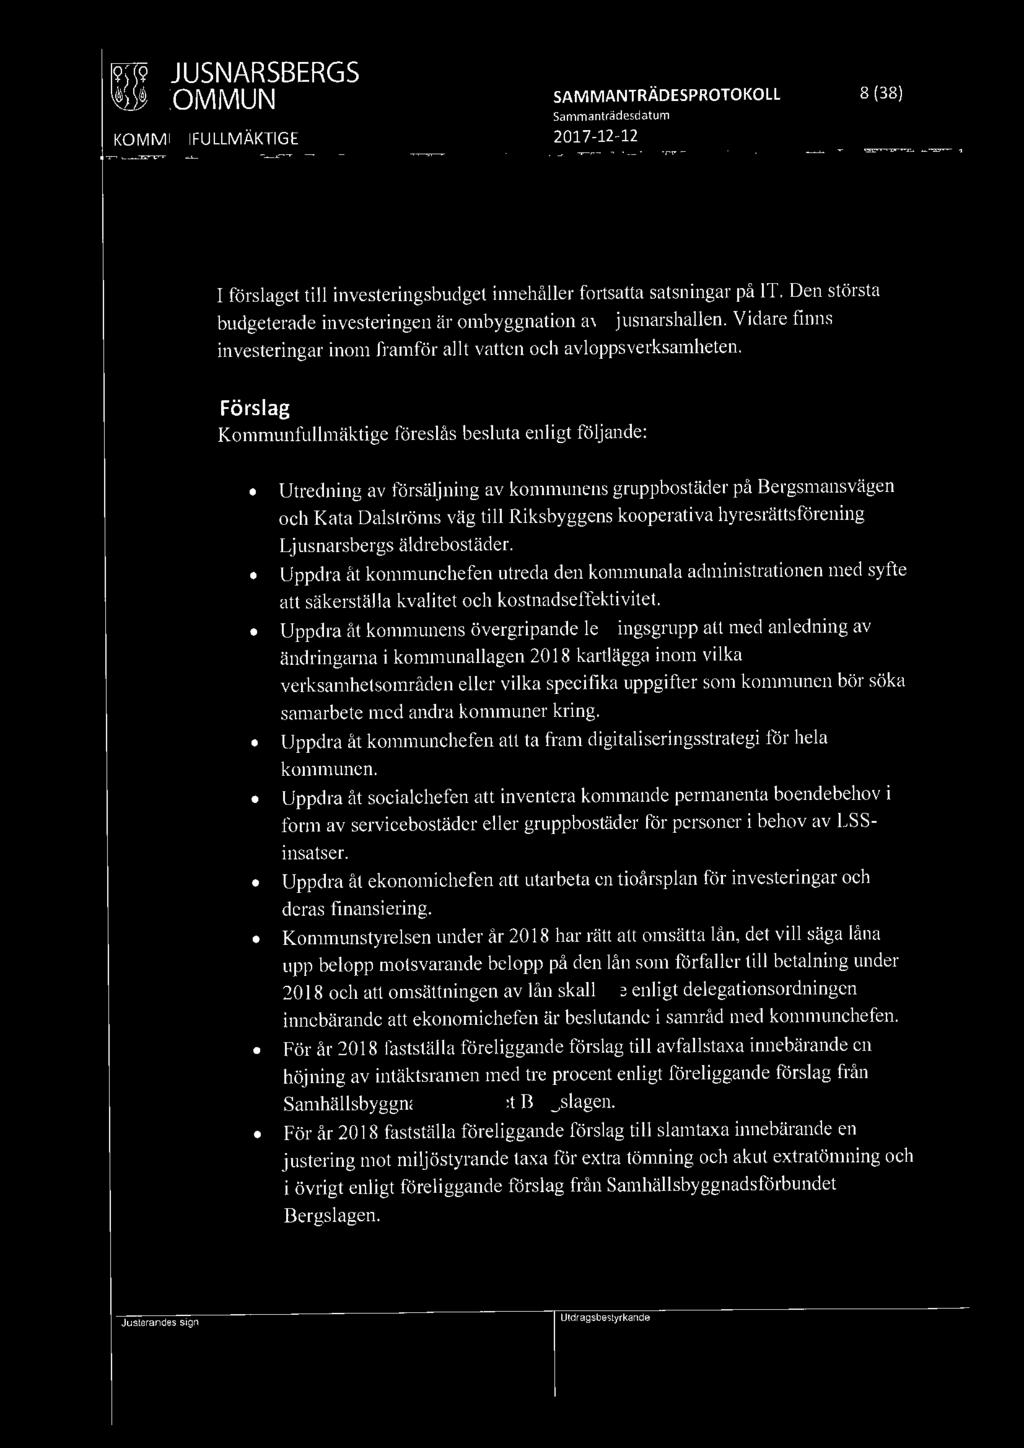 Förslag Kommunfullmäktige föreslås besluta enligt följande: Utredning av försäljning av kommunens gruppbostäder på Bergsmansvägen och Kata Dalströms väg till Riksbyggens kooperativa